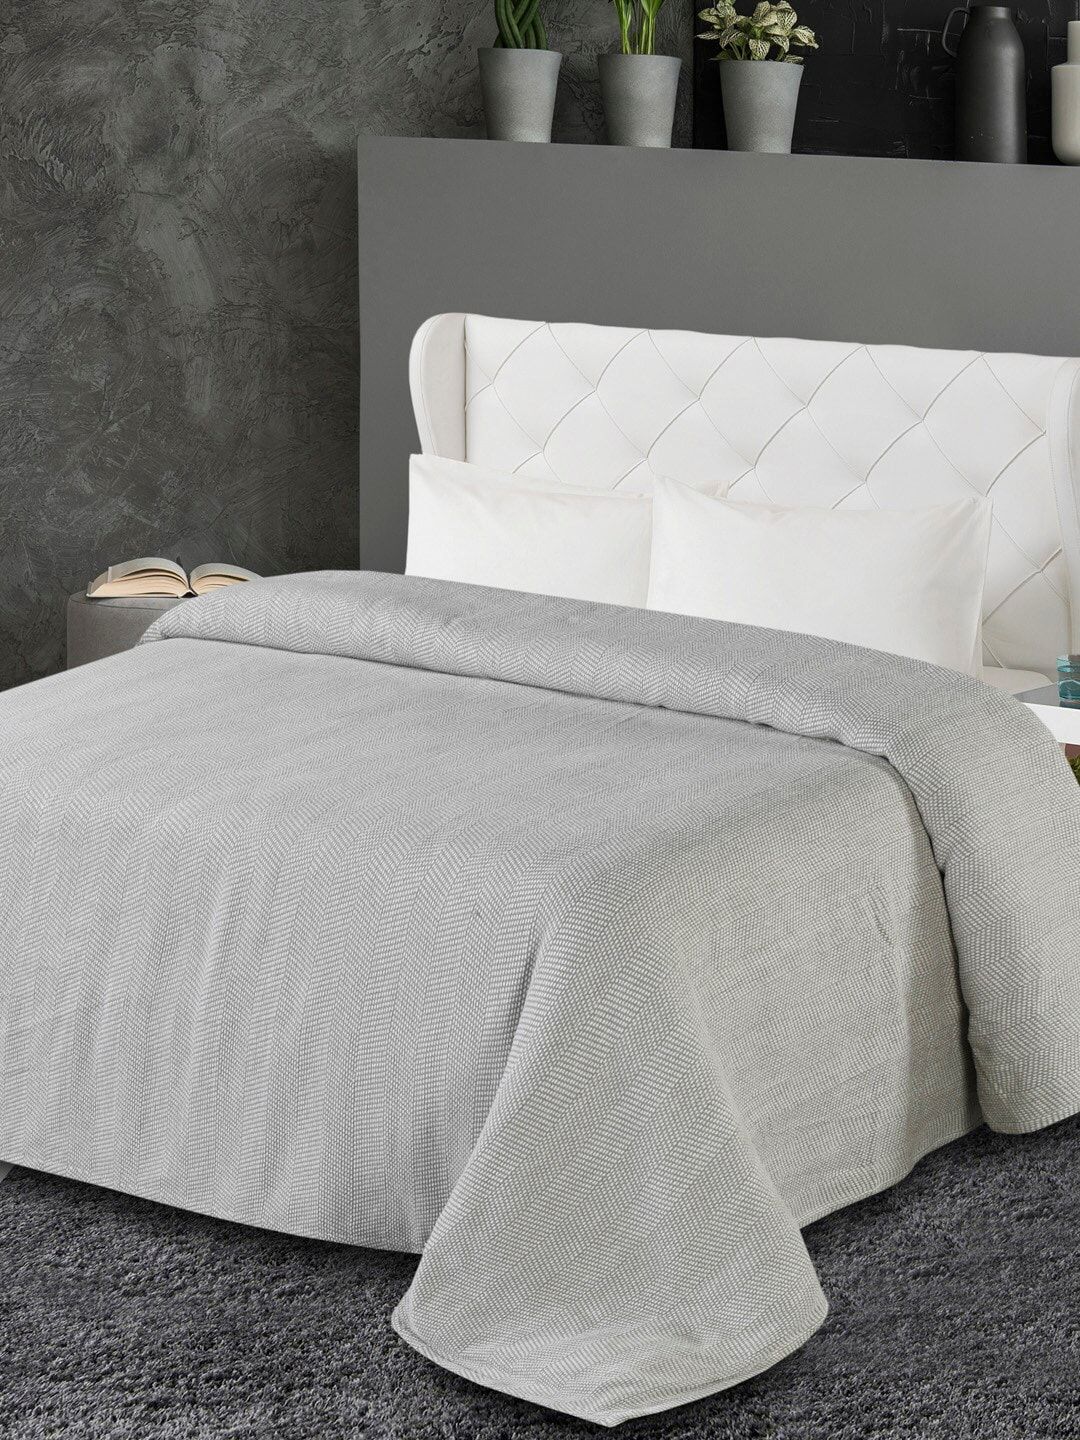 AVI Living Grey & White Self-Design AC Room 380 GSM Single Bed Blanket Price in India